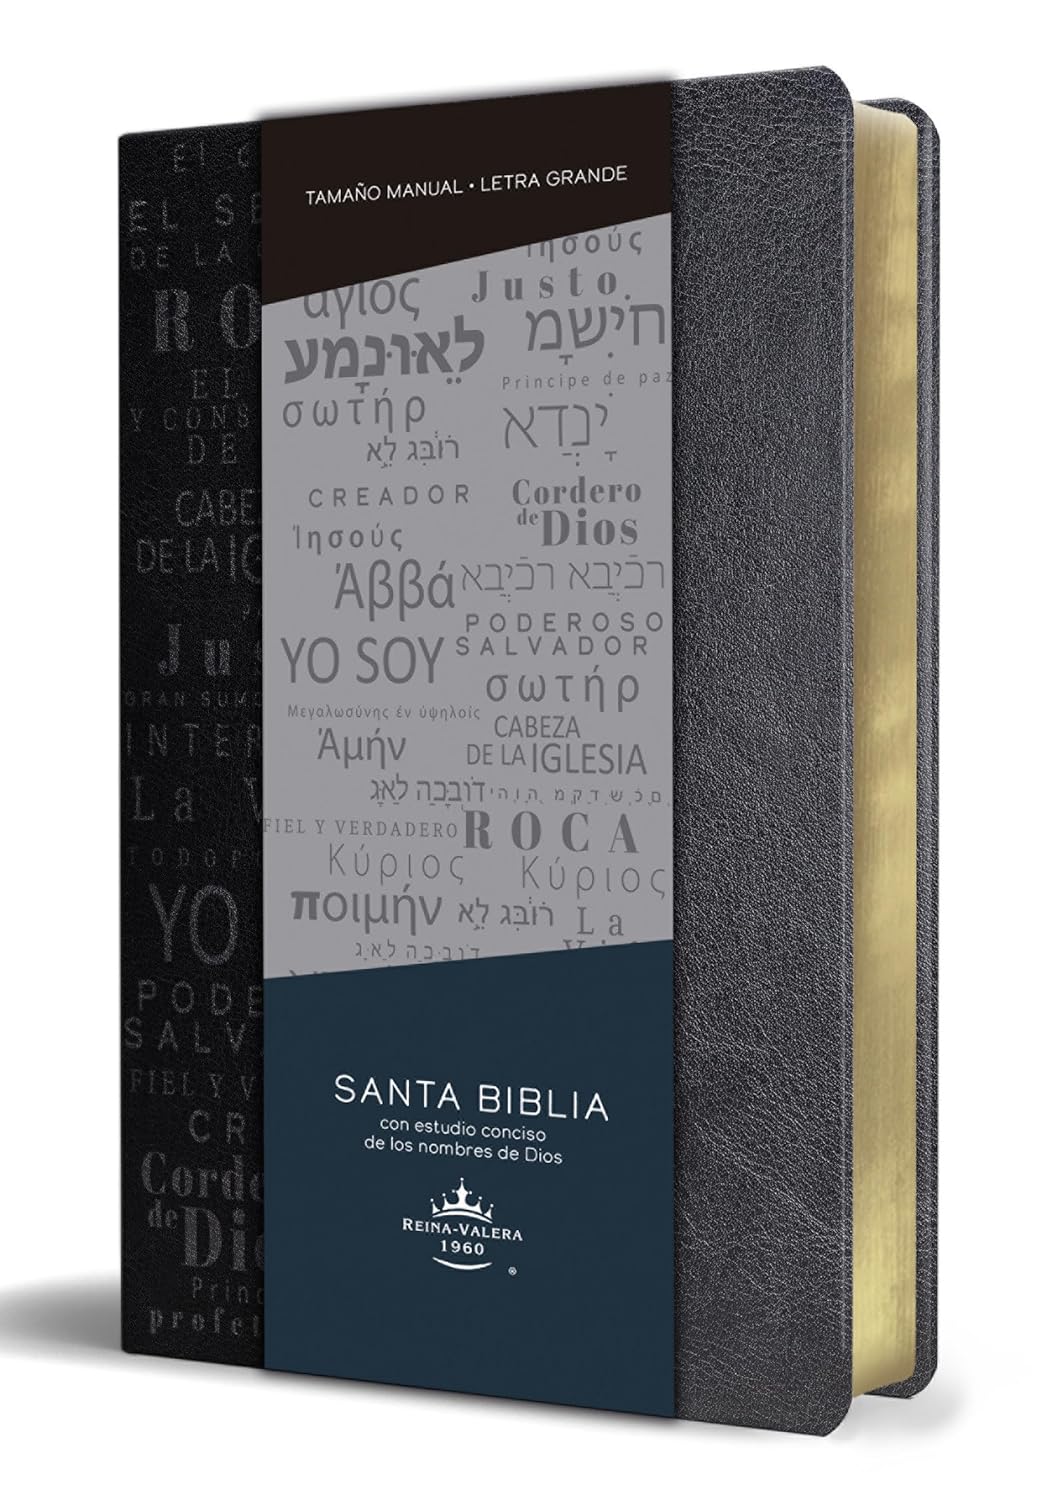 Biblia RVR60 Letra Grande Tamaño Manual, Símil Piel Negro con Nombres de Dios